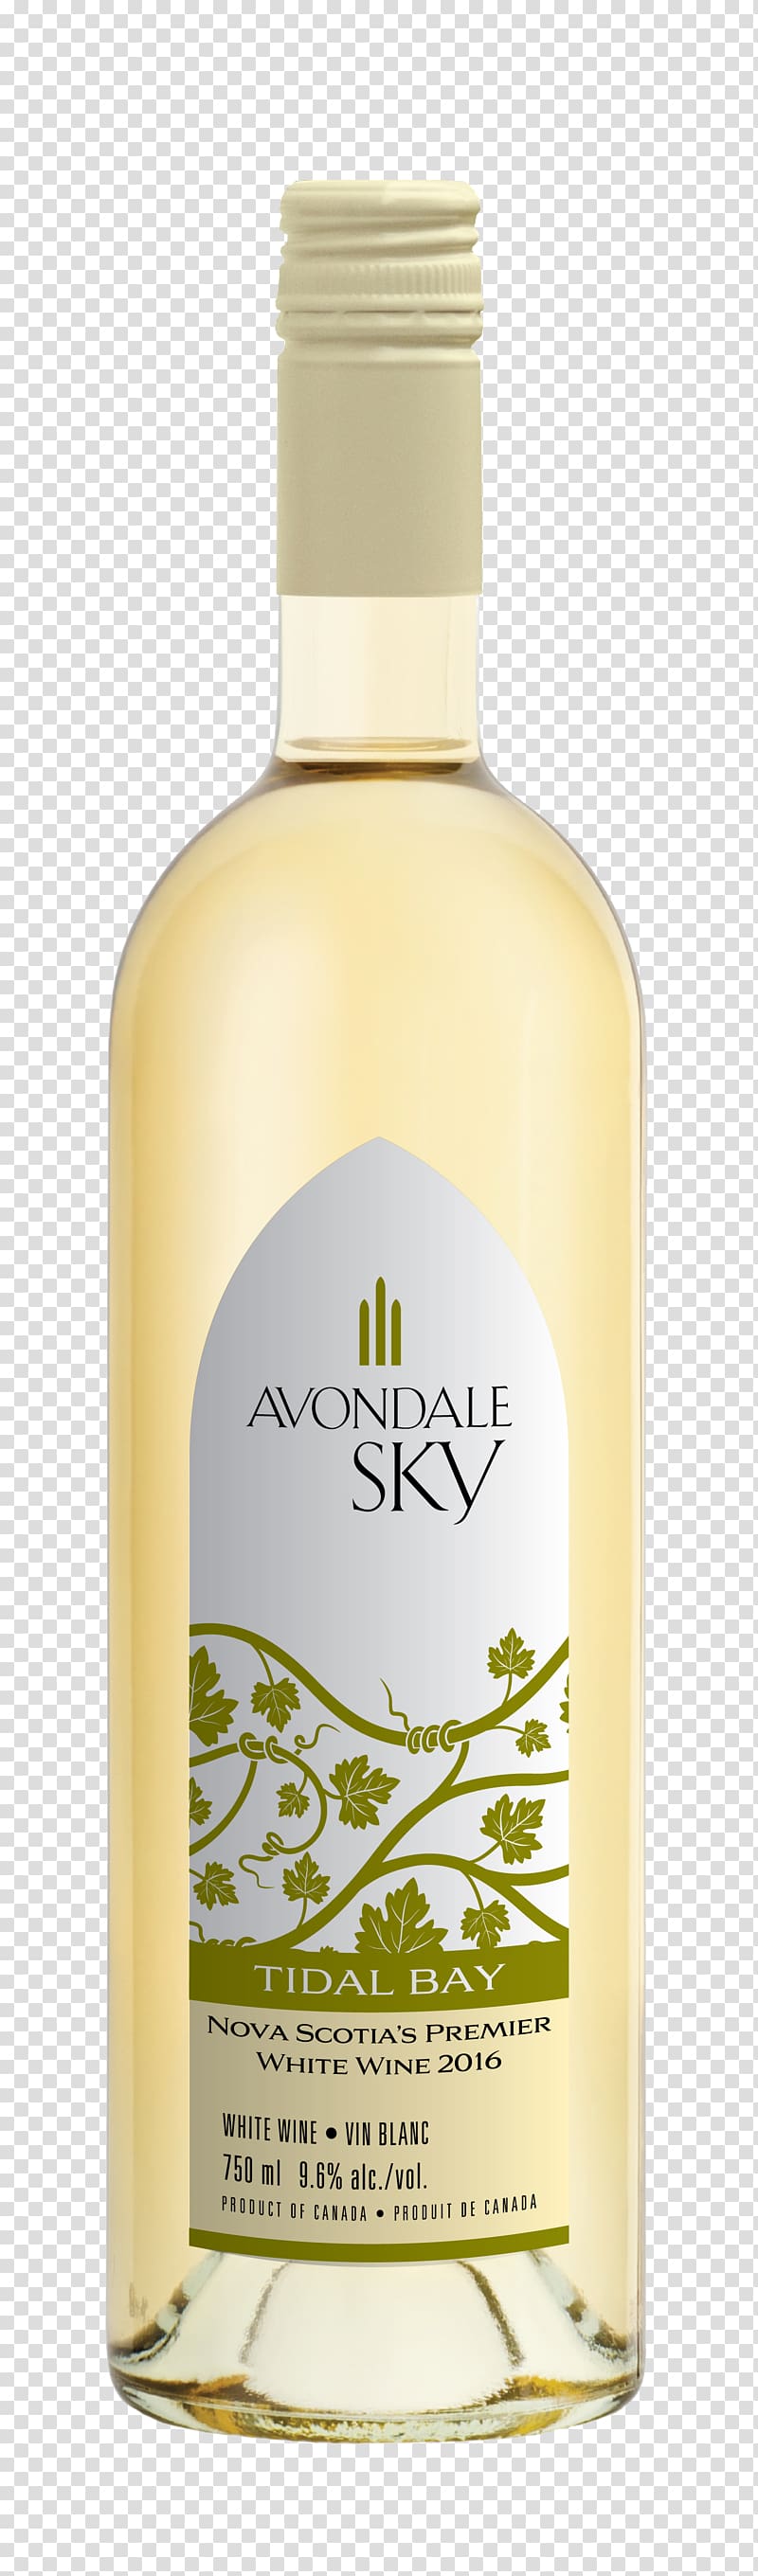 Avondale Sky Winery Liqueur Vidal blanc Viognier, wine transparent background PNG clipart